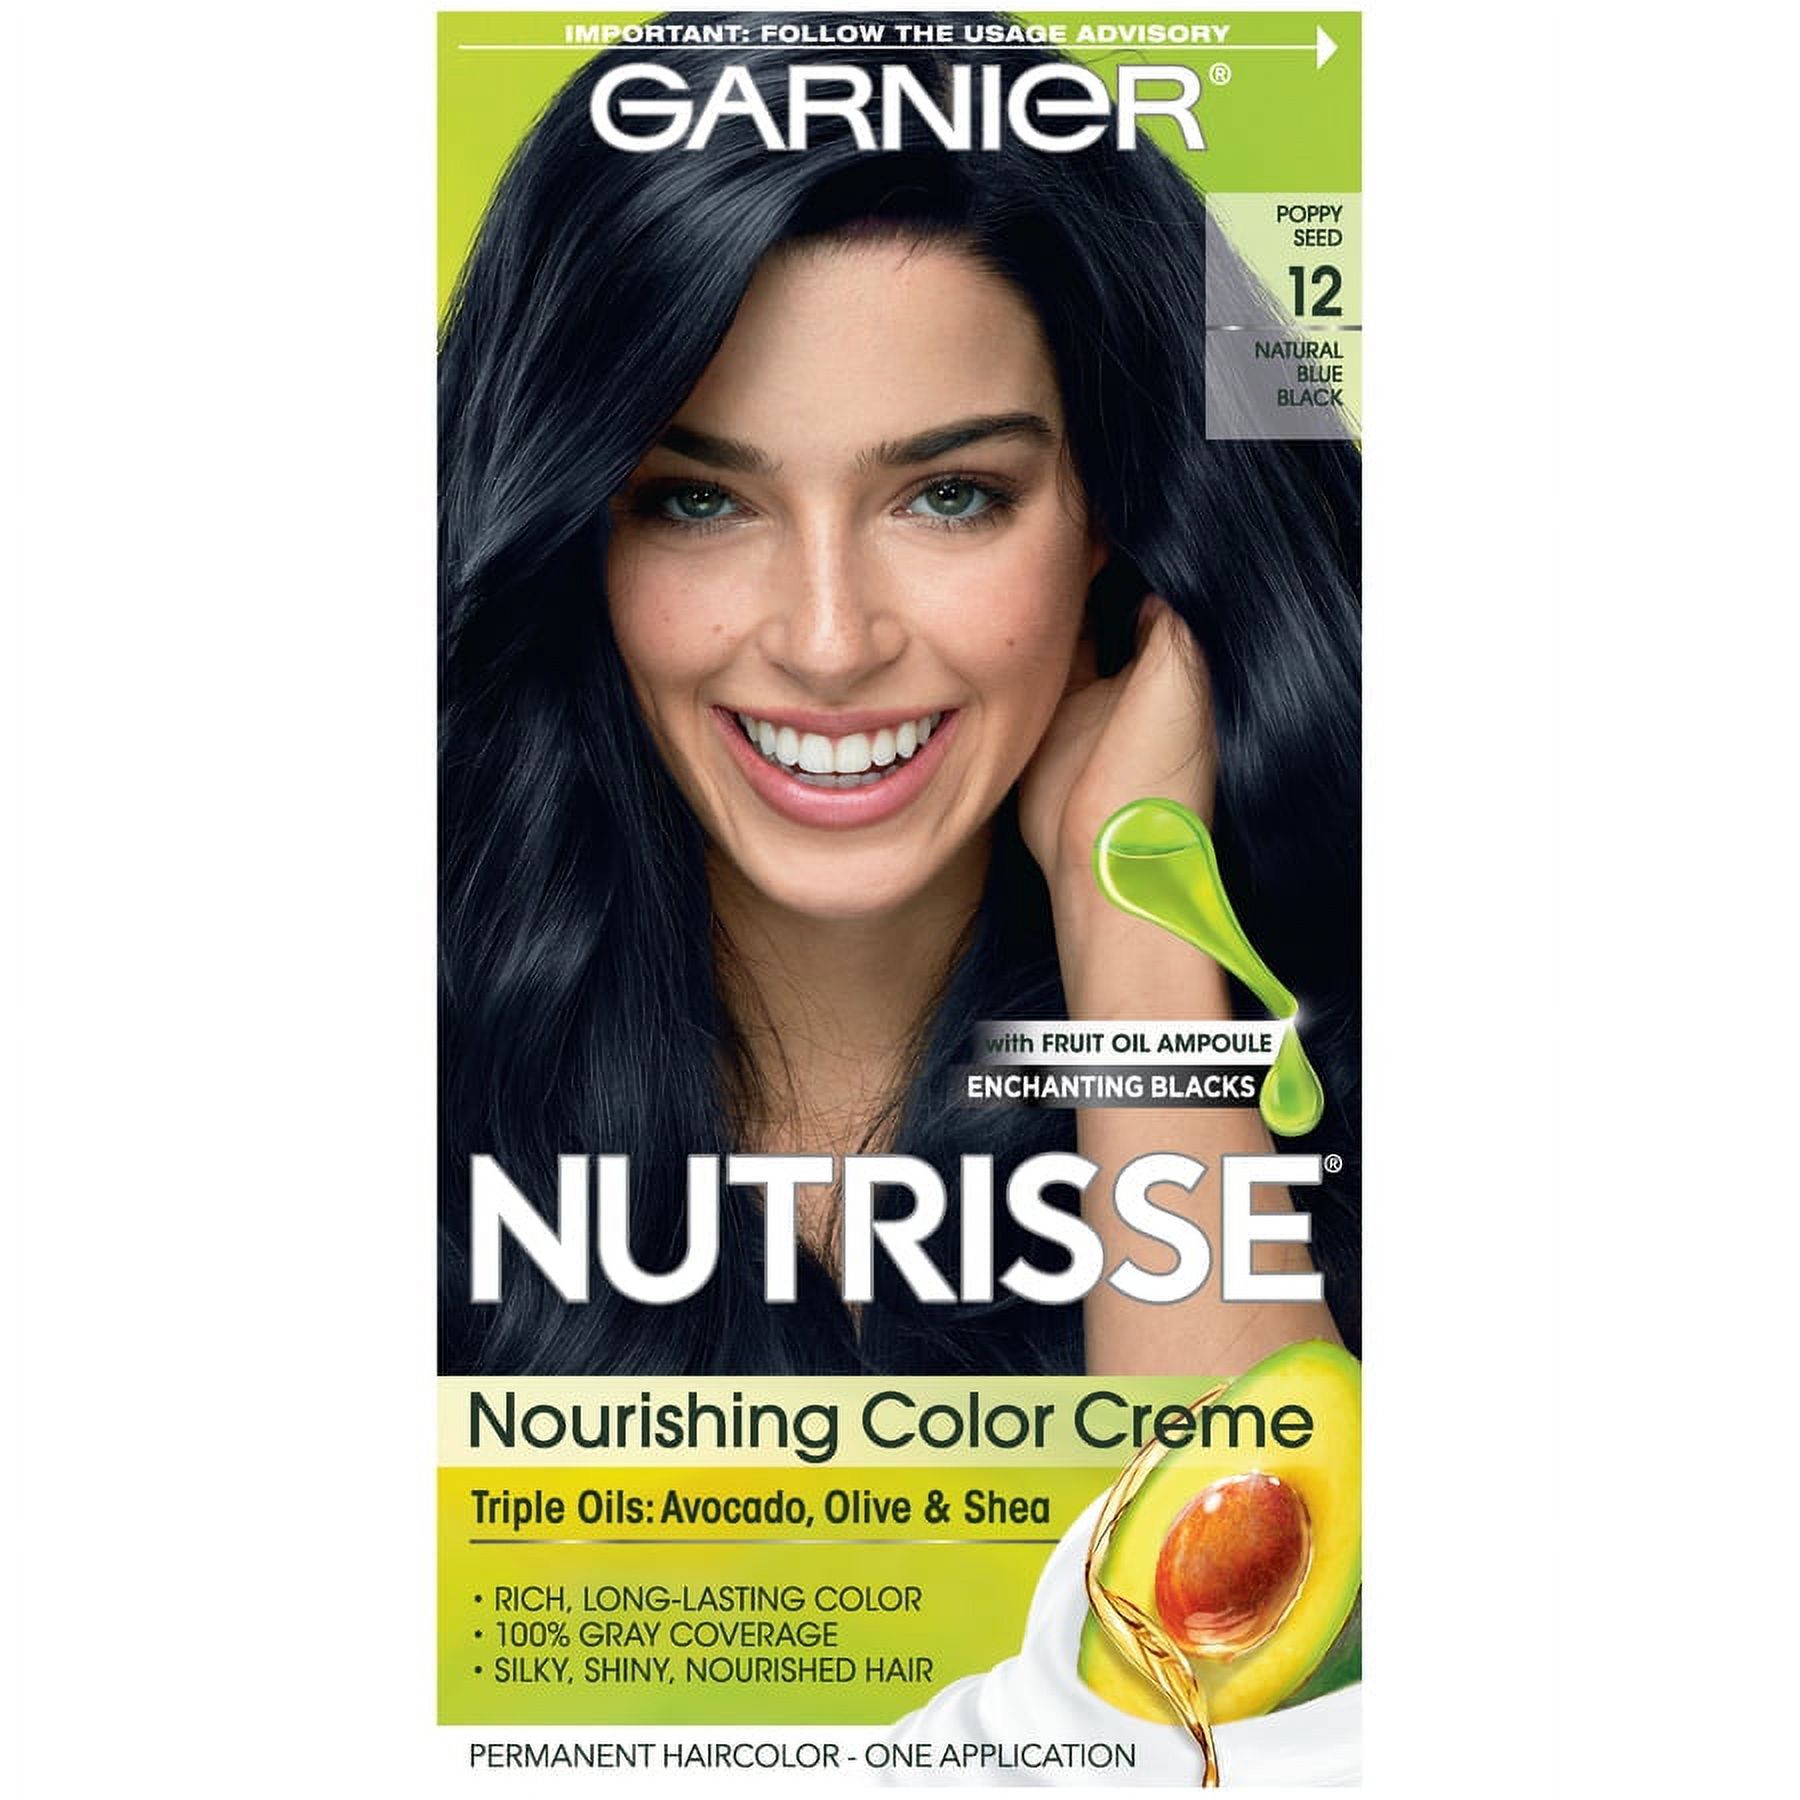 Garnier Nutrisse Nourishing Hair Color Creme, 012 Natural Blue Black - image 1 of 4